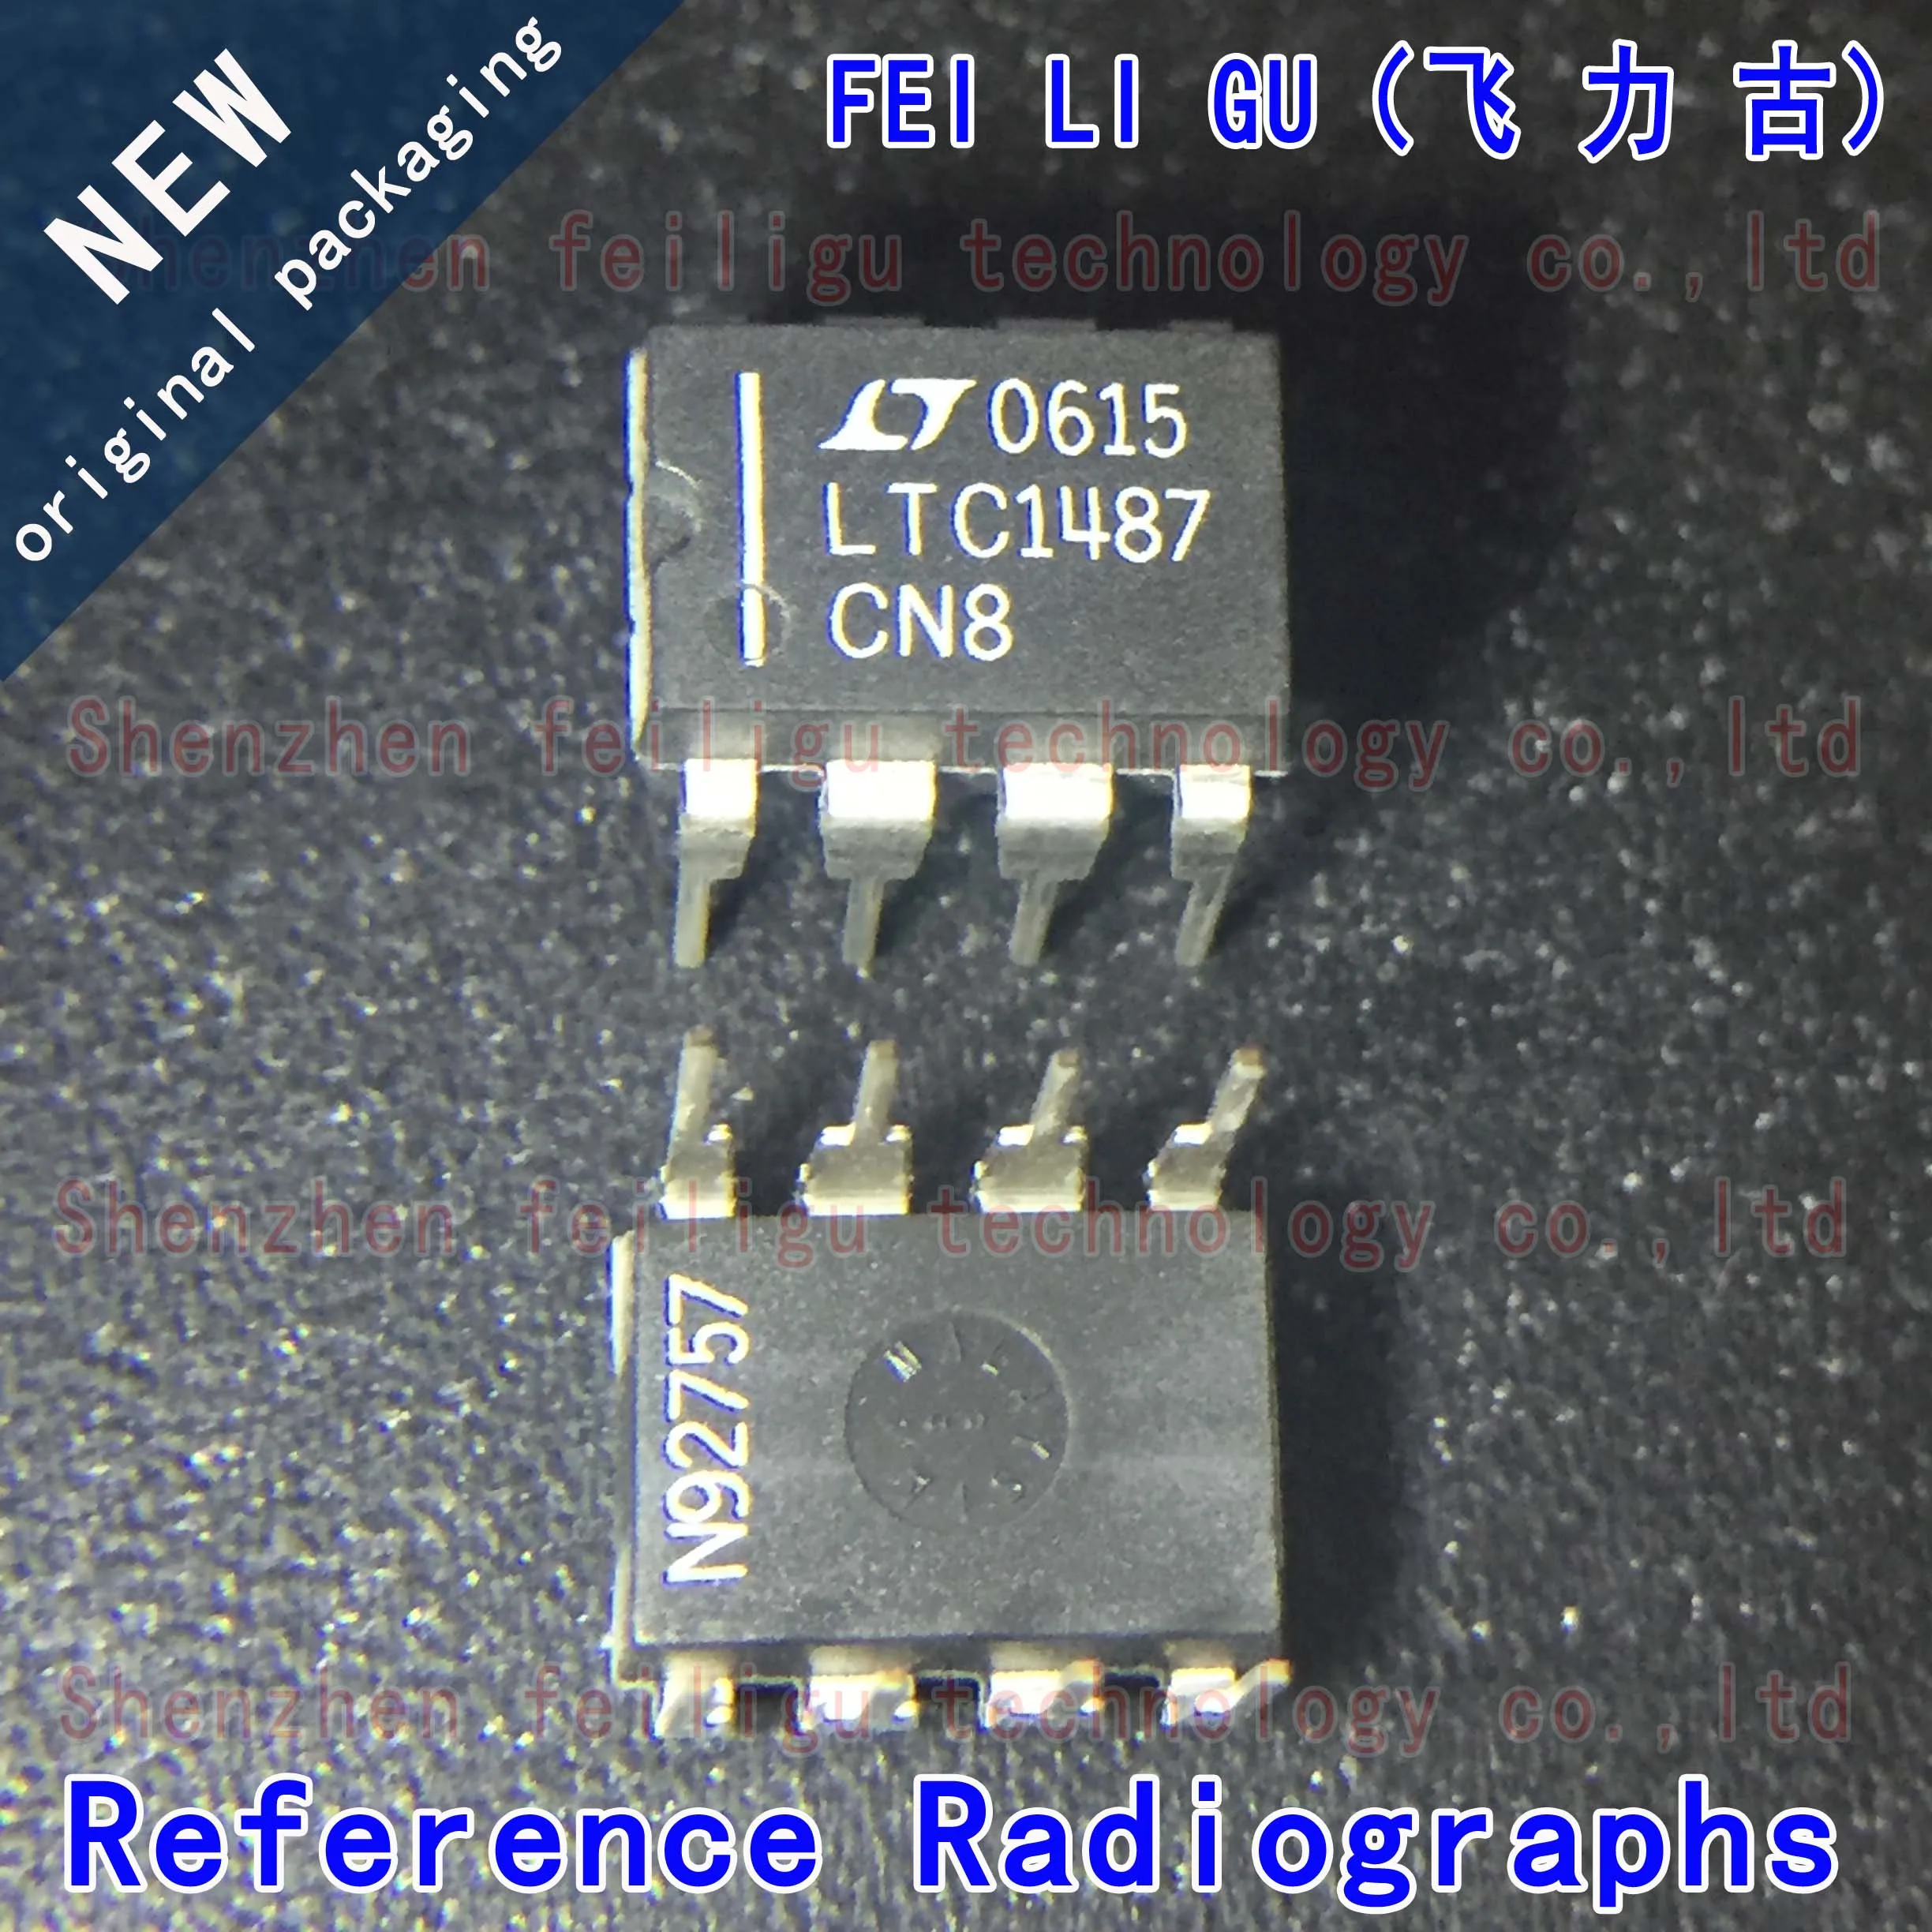 1~30PCS 100% New original LTC1487CN8#PBF LTC1487CN8 LTC1487 Package:DIP8 Inline RS-485/RS-422 Transceiver Chip 30pcs sn74lvc245apwr original tssop 20 close pin lc245a 74lvc245 transceiver chip